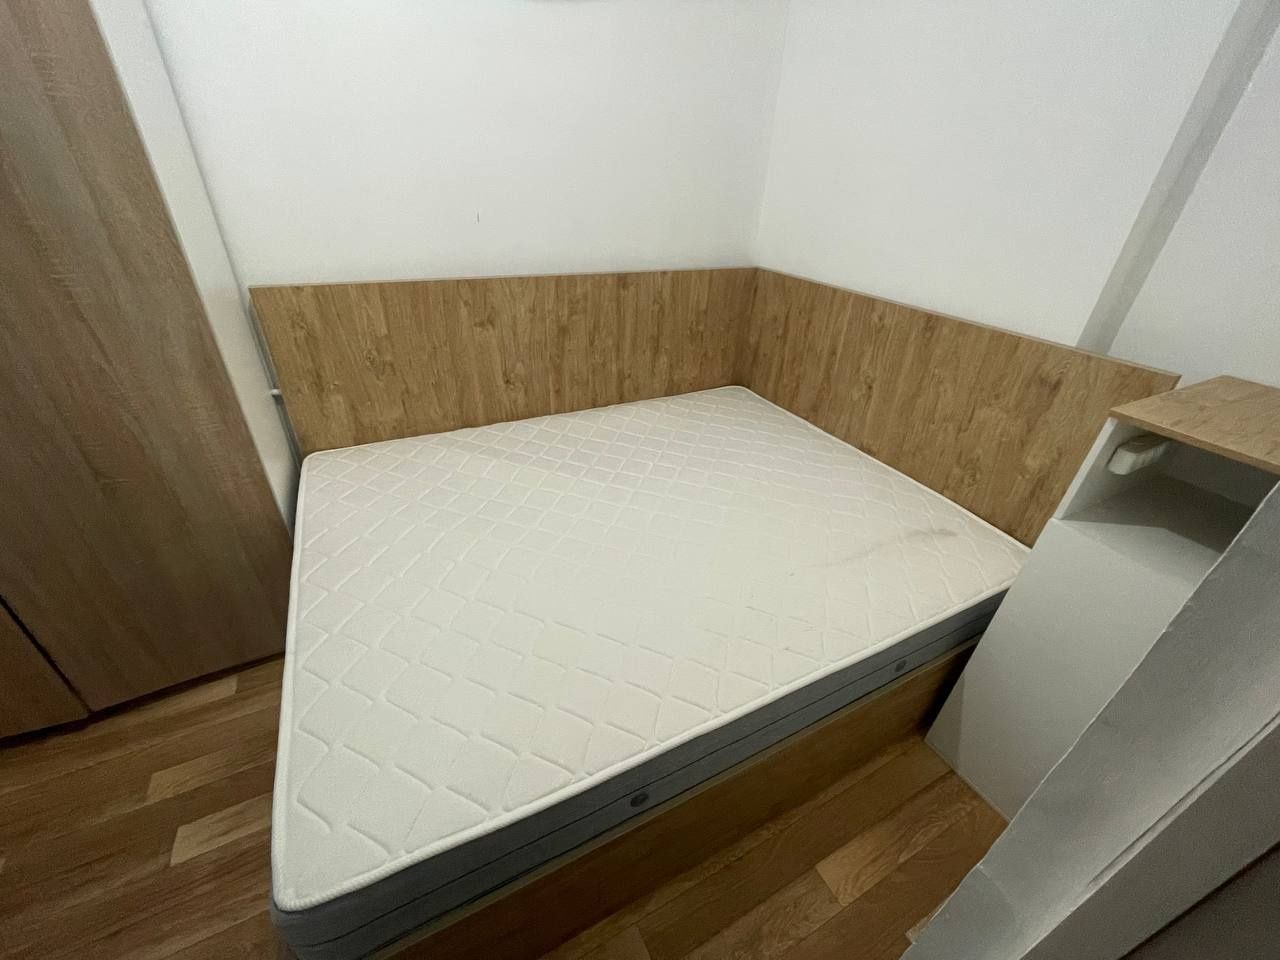 Продам мебель Кровать с матрасом, шкаф для одежды и прикроватная тумба